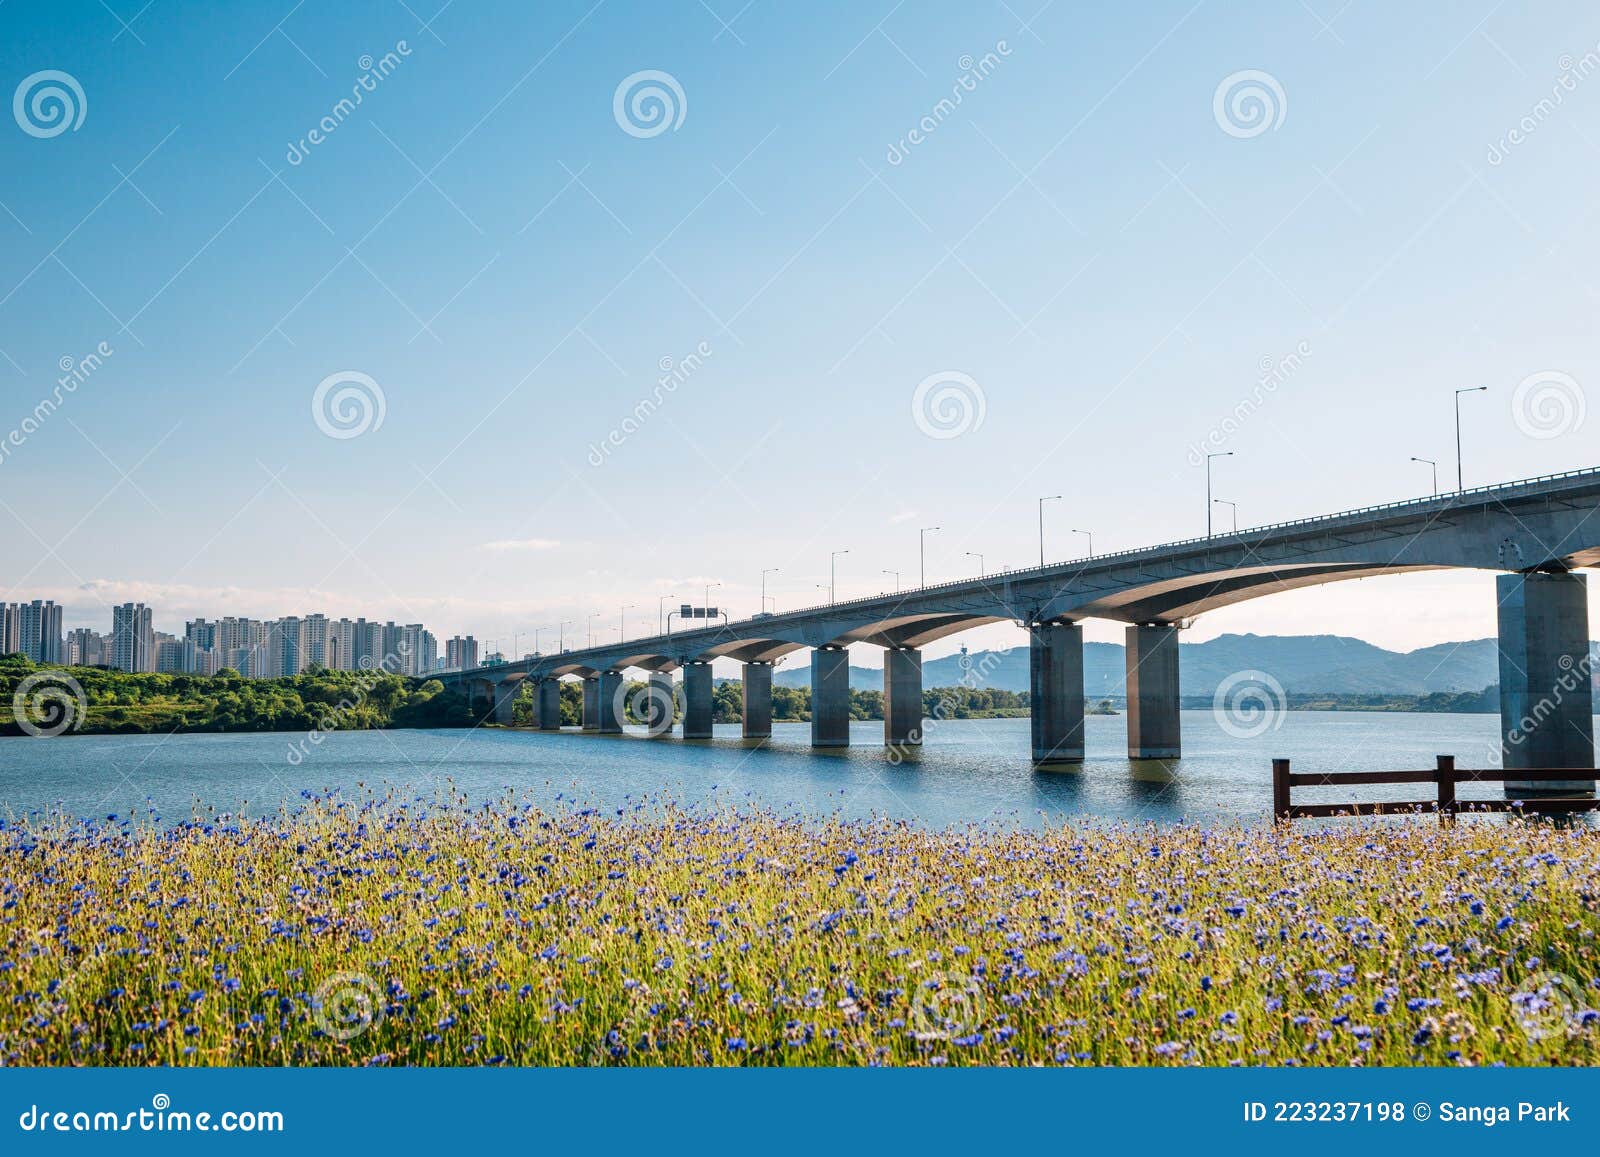 misa bridge and namyangju hangang river park sampae district at spring in korea